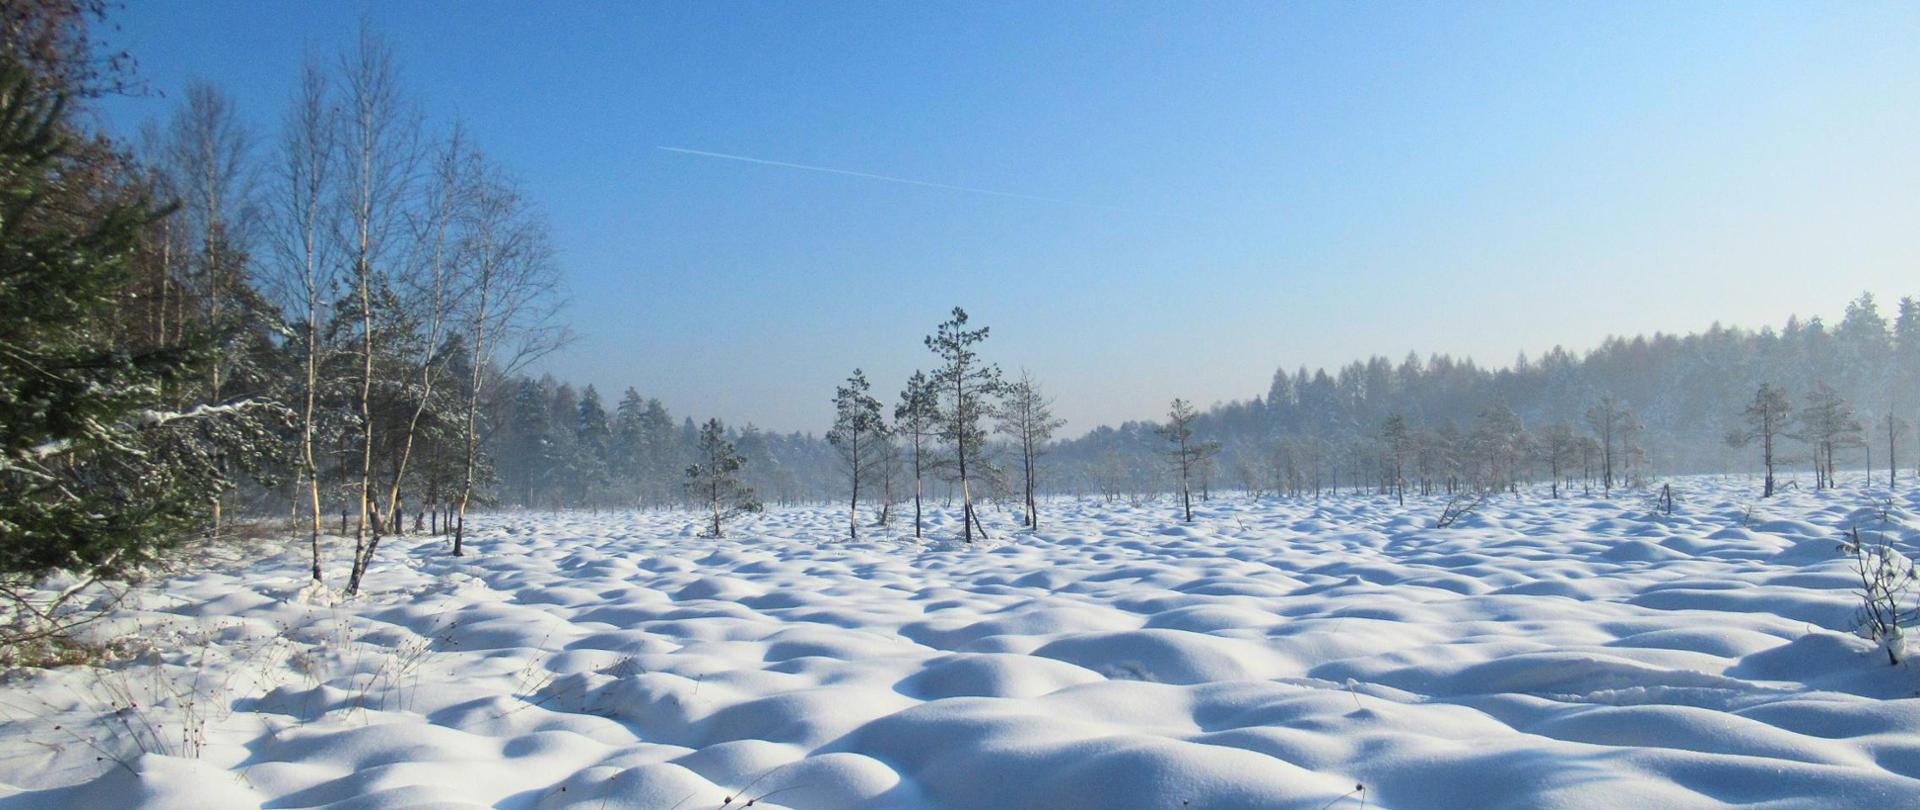 Pojedyncze drzewa na powierzchni zasypanej śniegiem